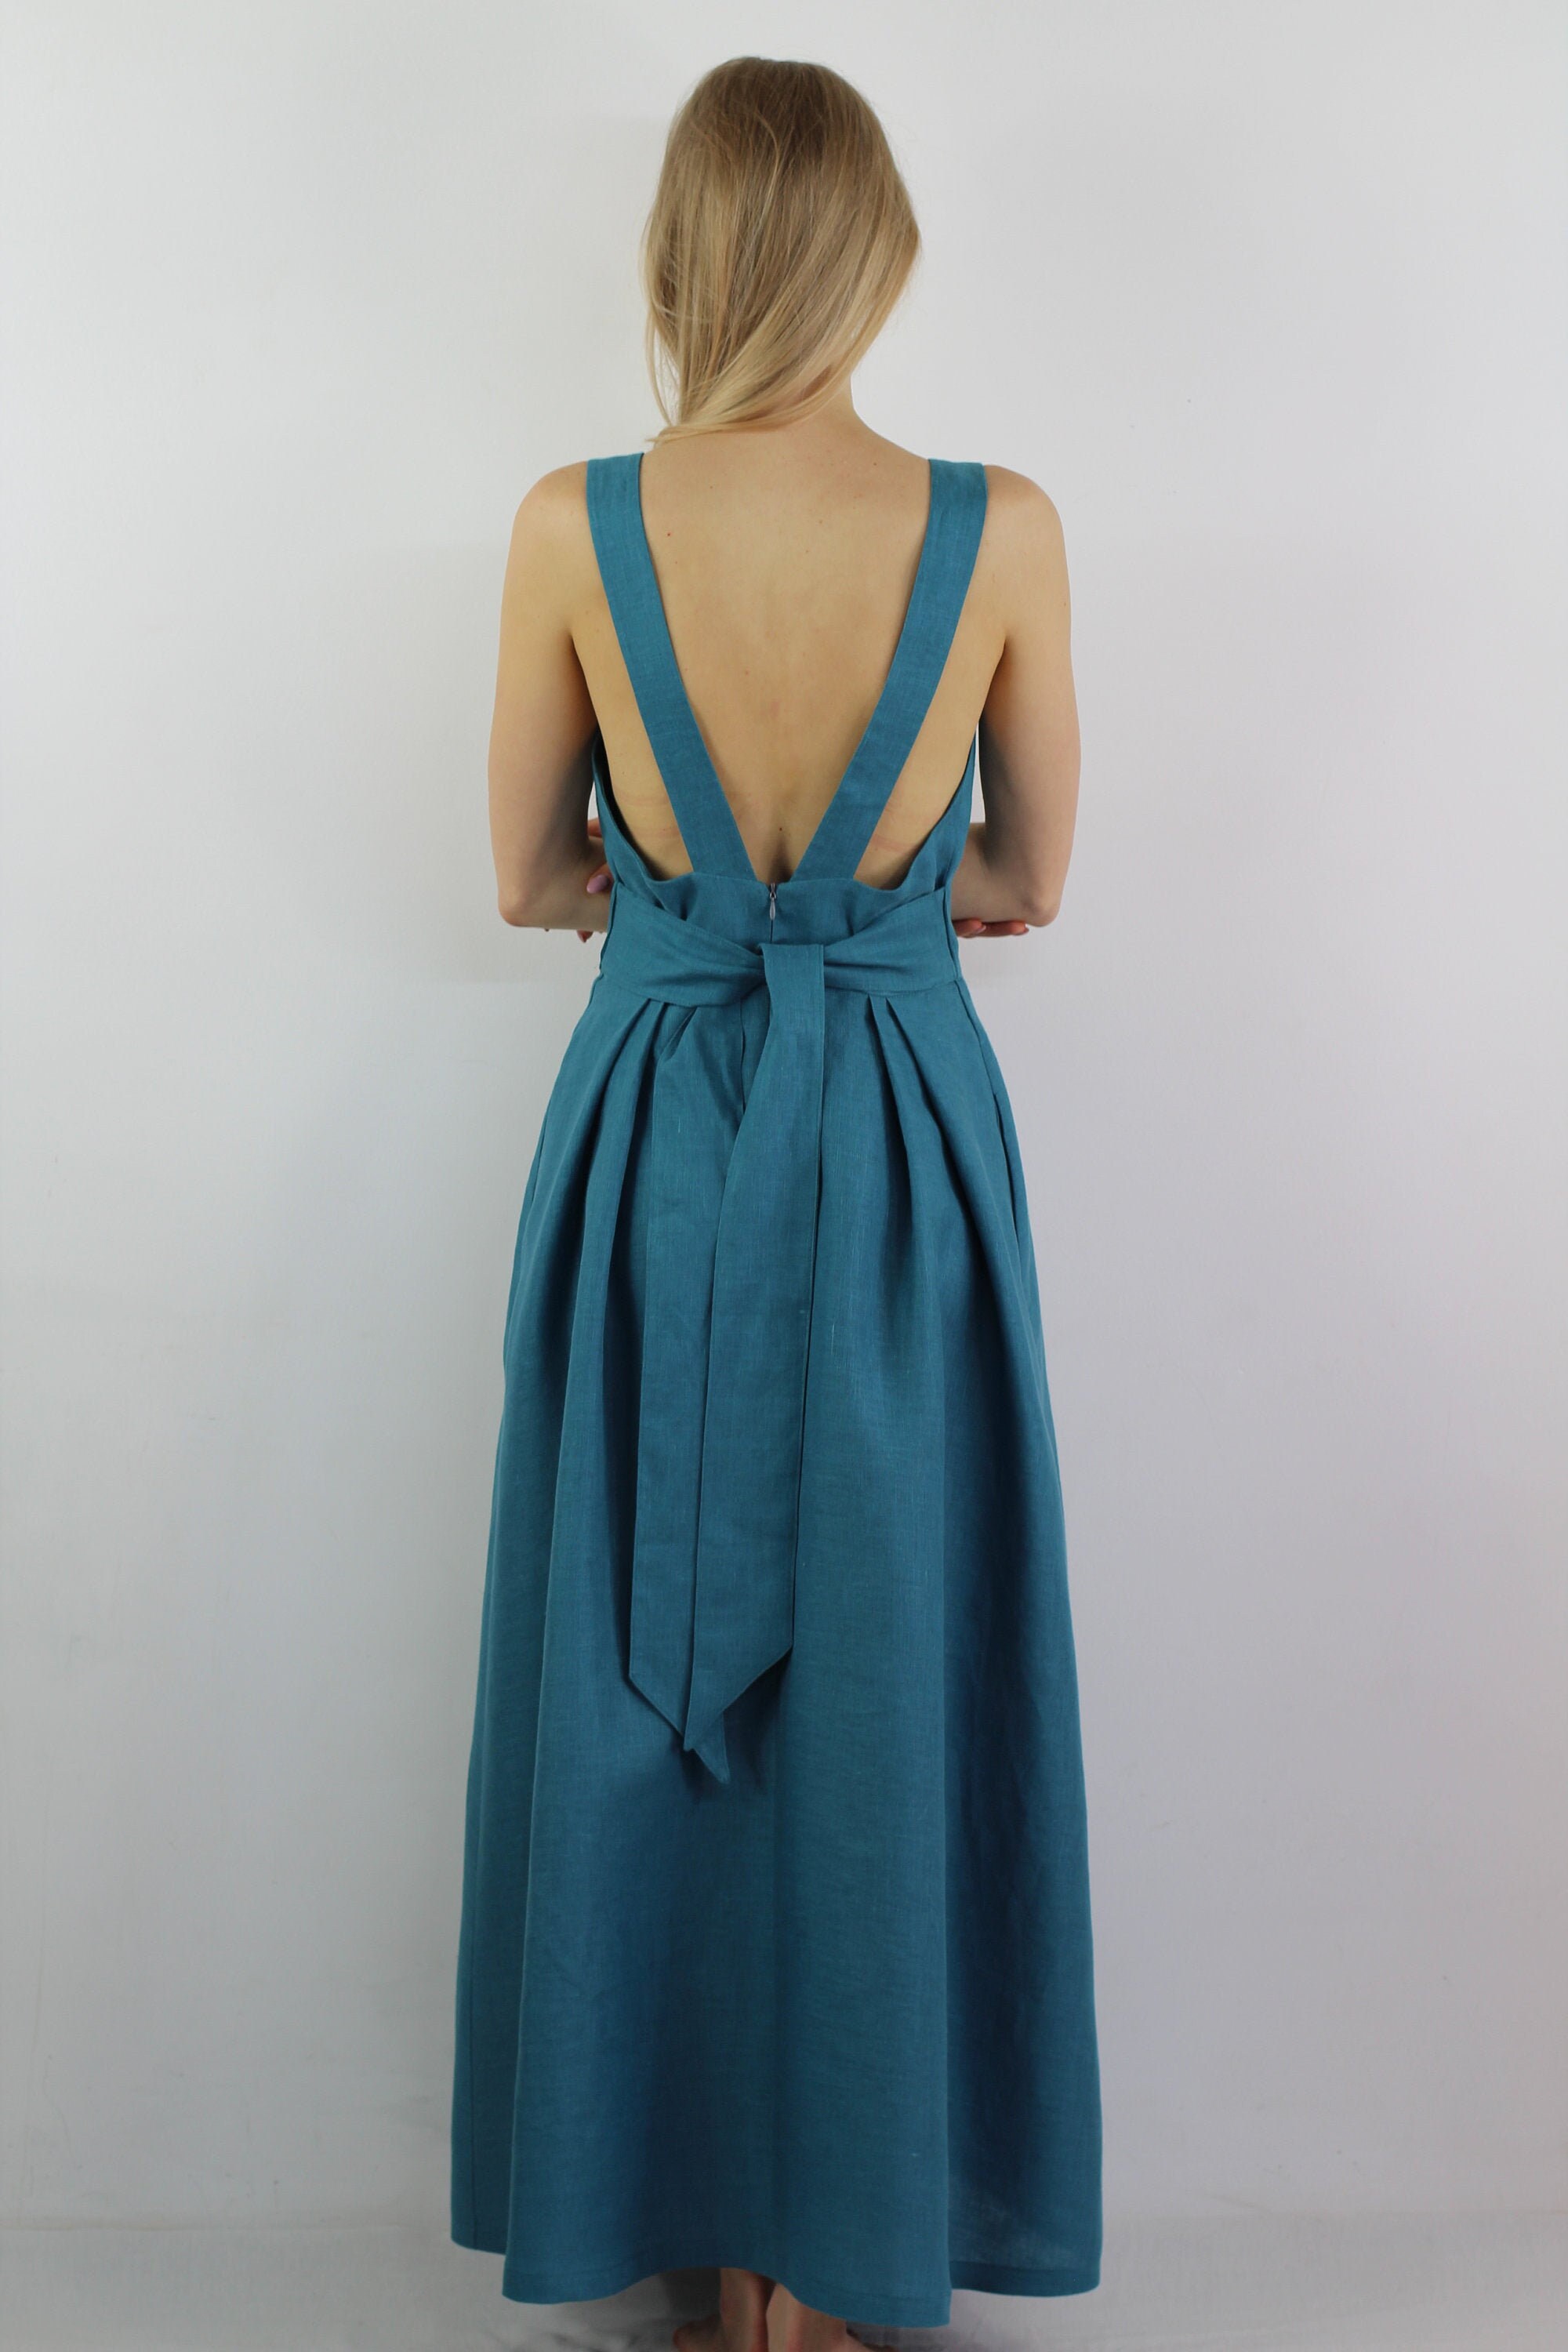 Evening Dress/ Sleeveless Dress/ Maxi Linen Dress/ Casual | Etsy